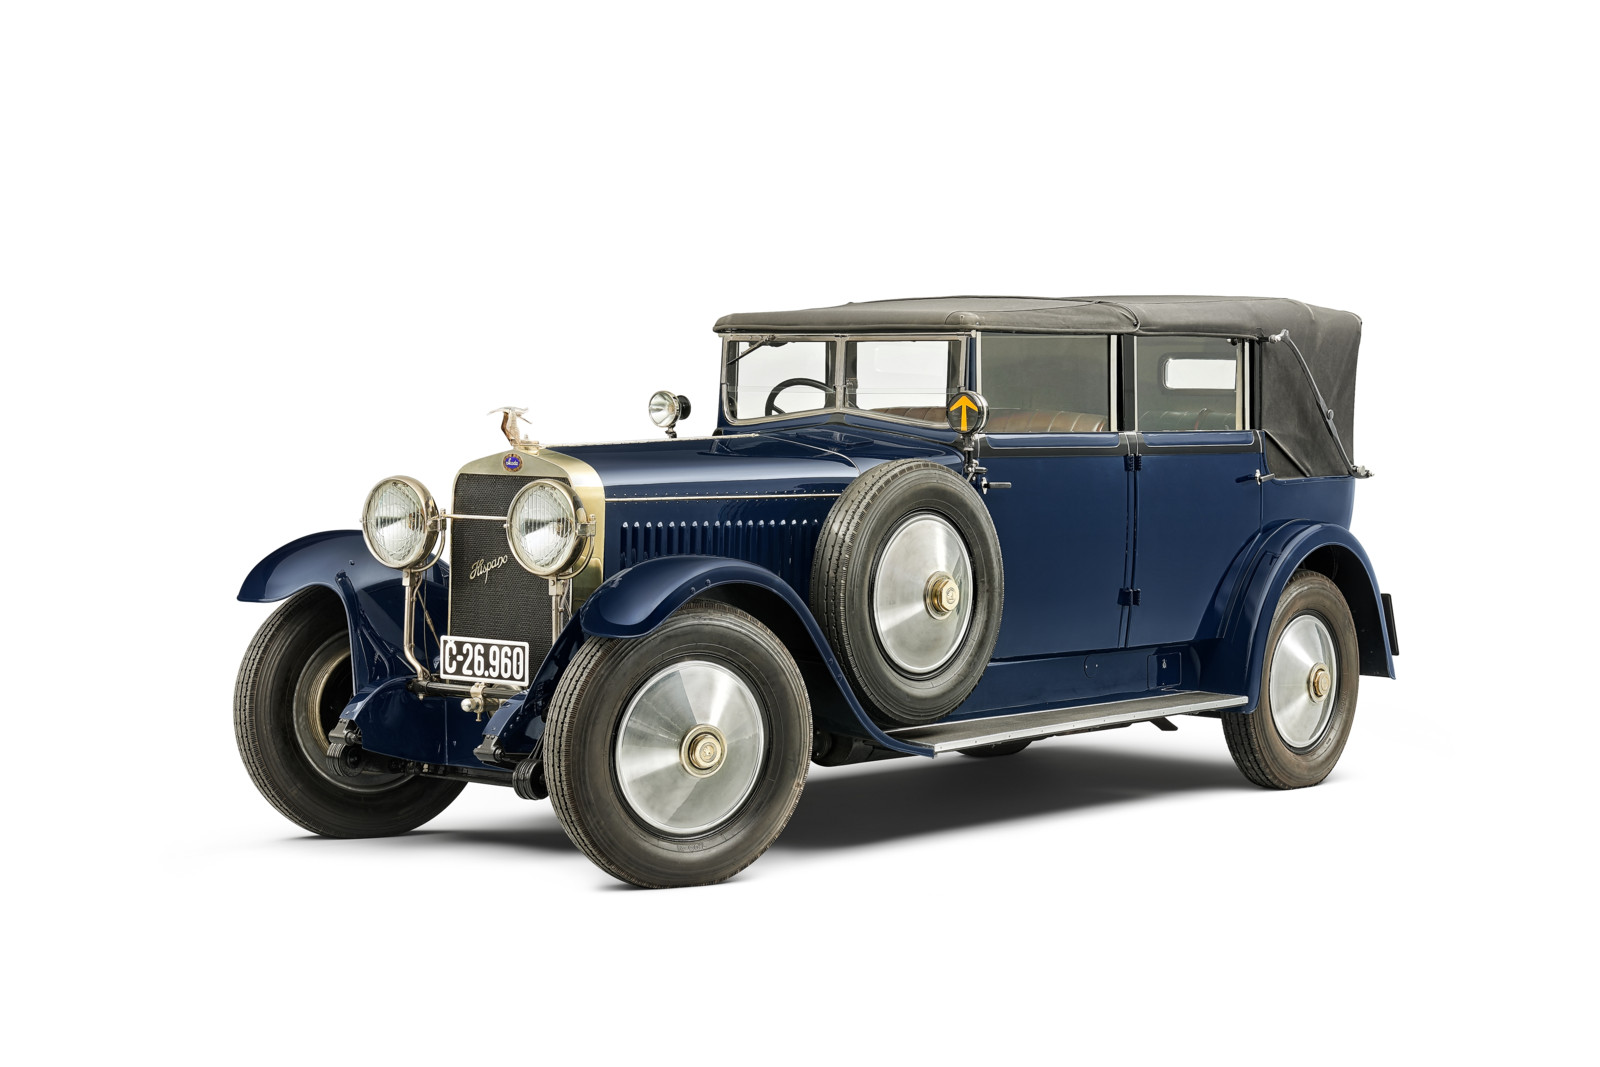 Das in Essen ausgestellte Lizenzmodell Škoda Hispano-Suiza geht auf den H6B des 1902 gegründeten Autobauer Hispano-Suiza zurück.